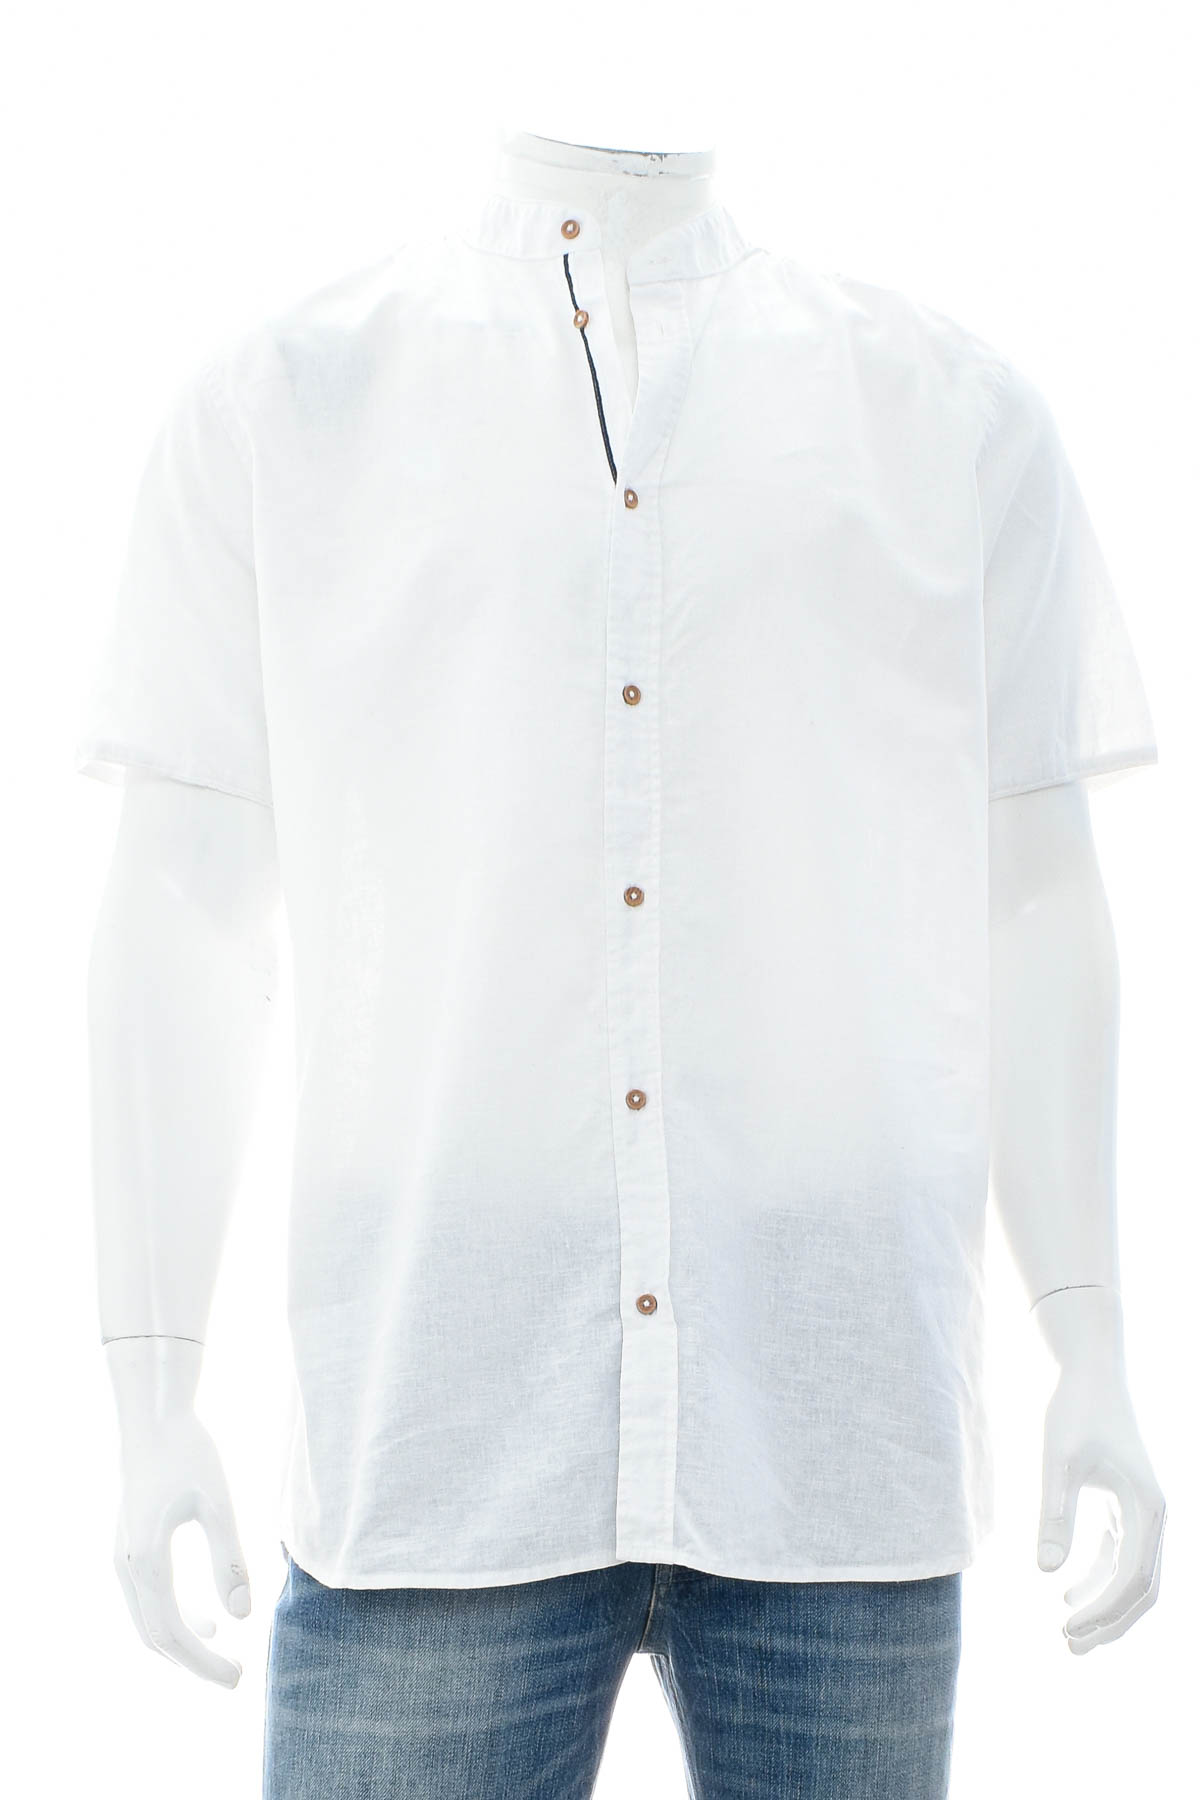 Ανδρικό πουκάμισο - LIVERGY - 0